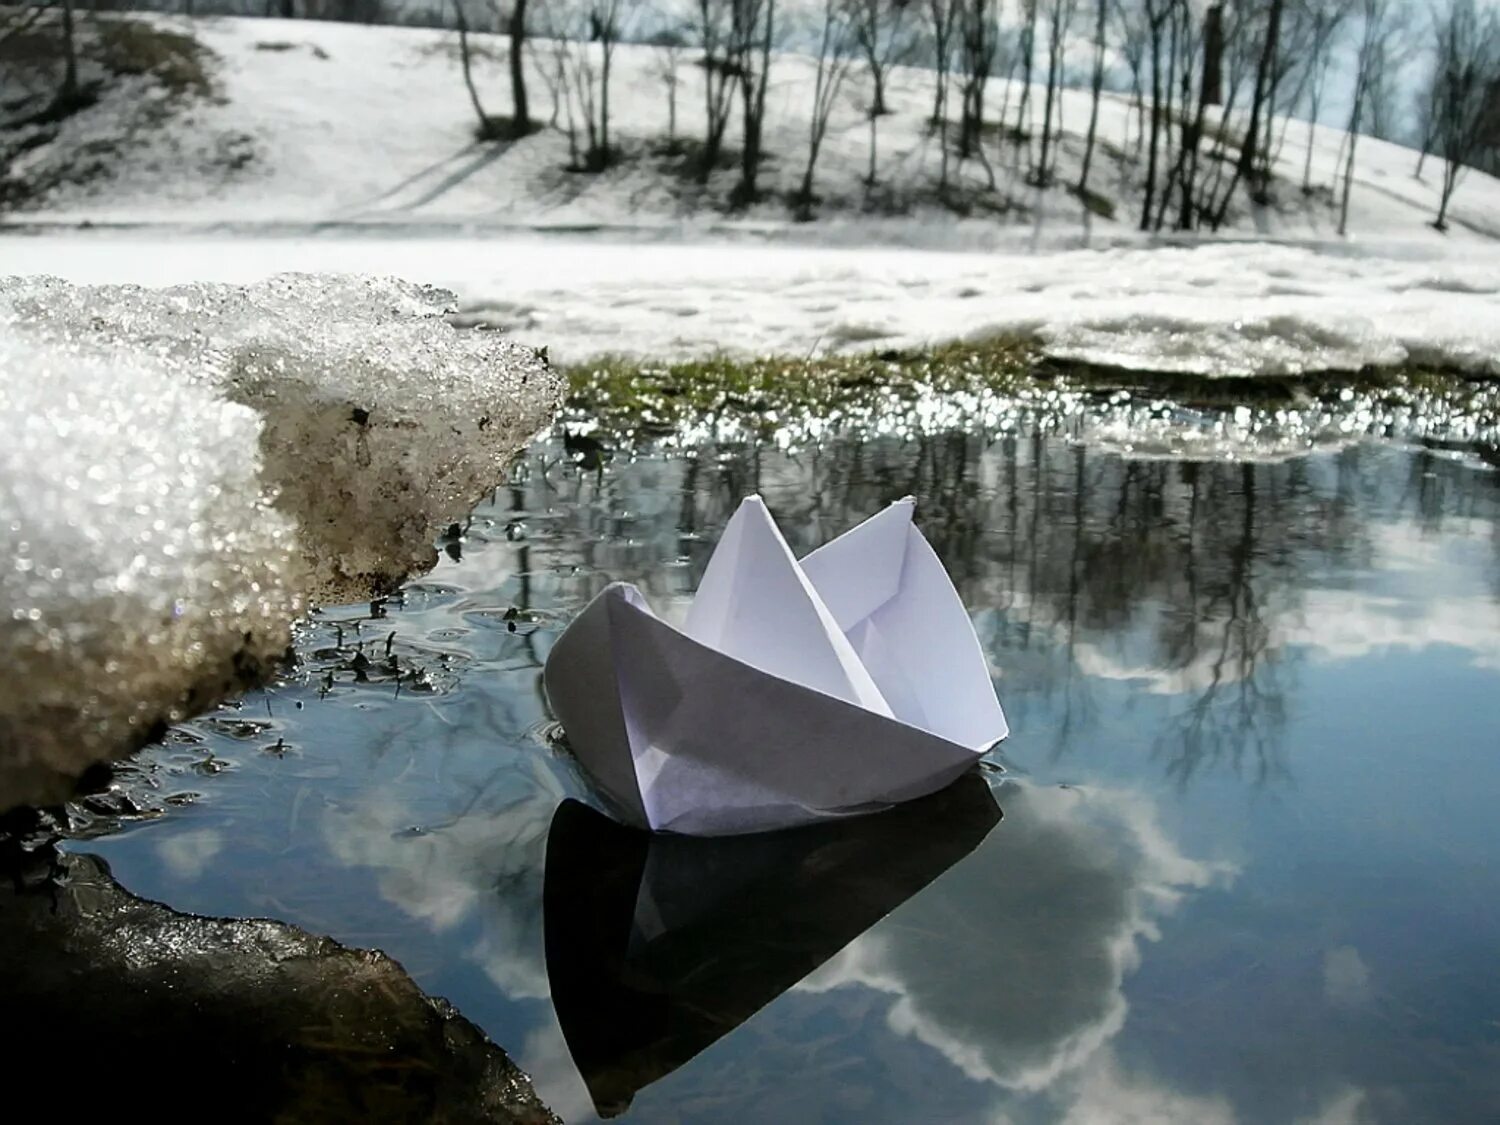 Кораблик из бумаги я по ручью пустил. Весенние ручьи. Бумажный кораблик в ручейке.